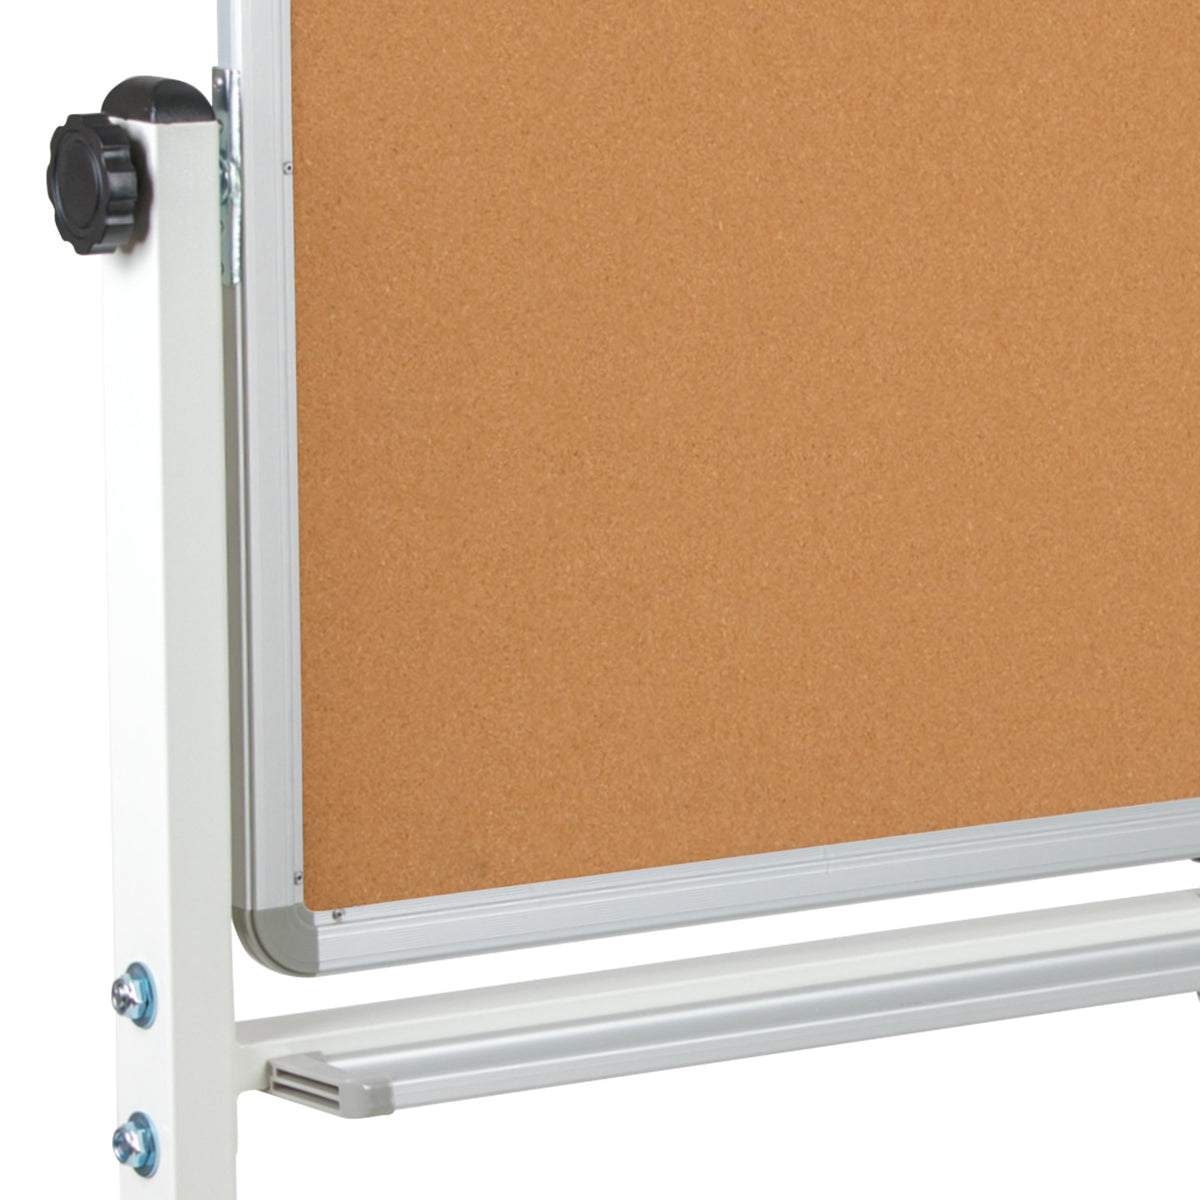 53"W x 62.5"H |#| 53"W x 62.5"H Reversible Mobile Cork Bulletin & White Board with Pen Tray